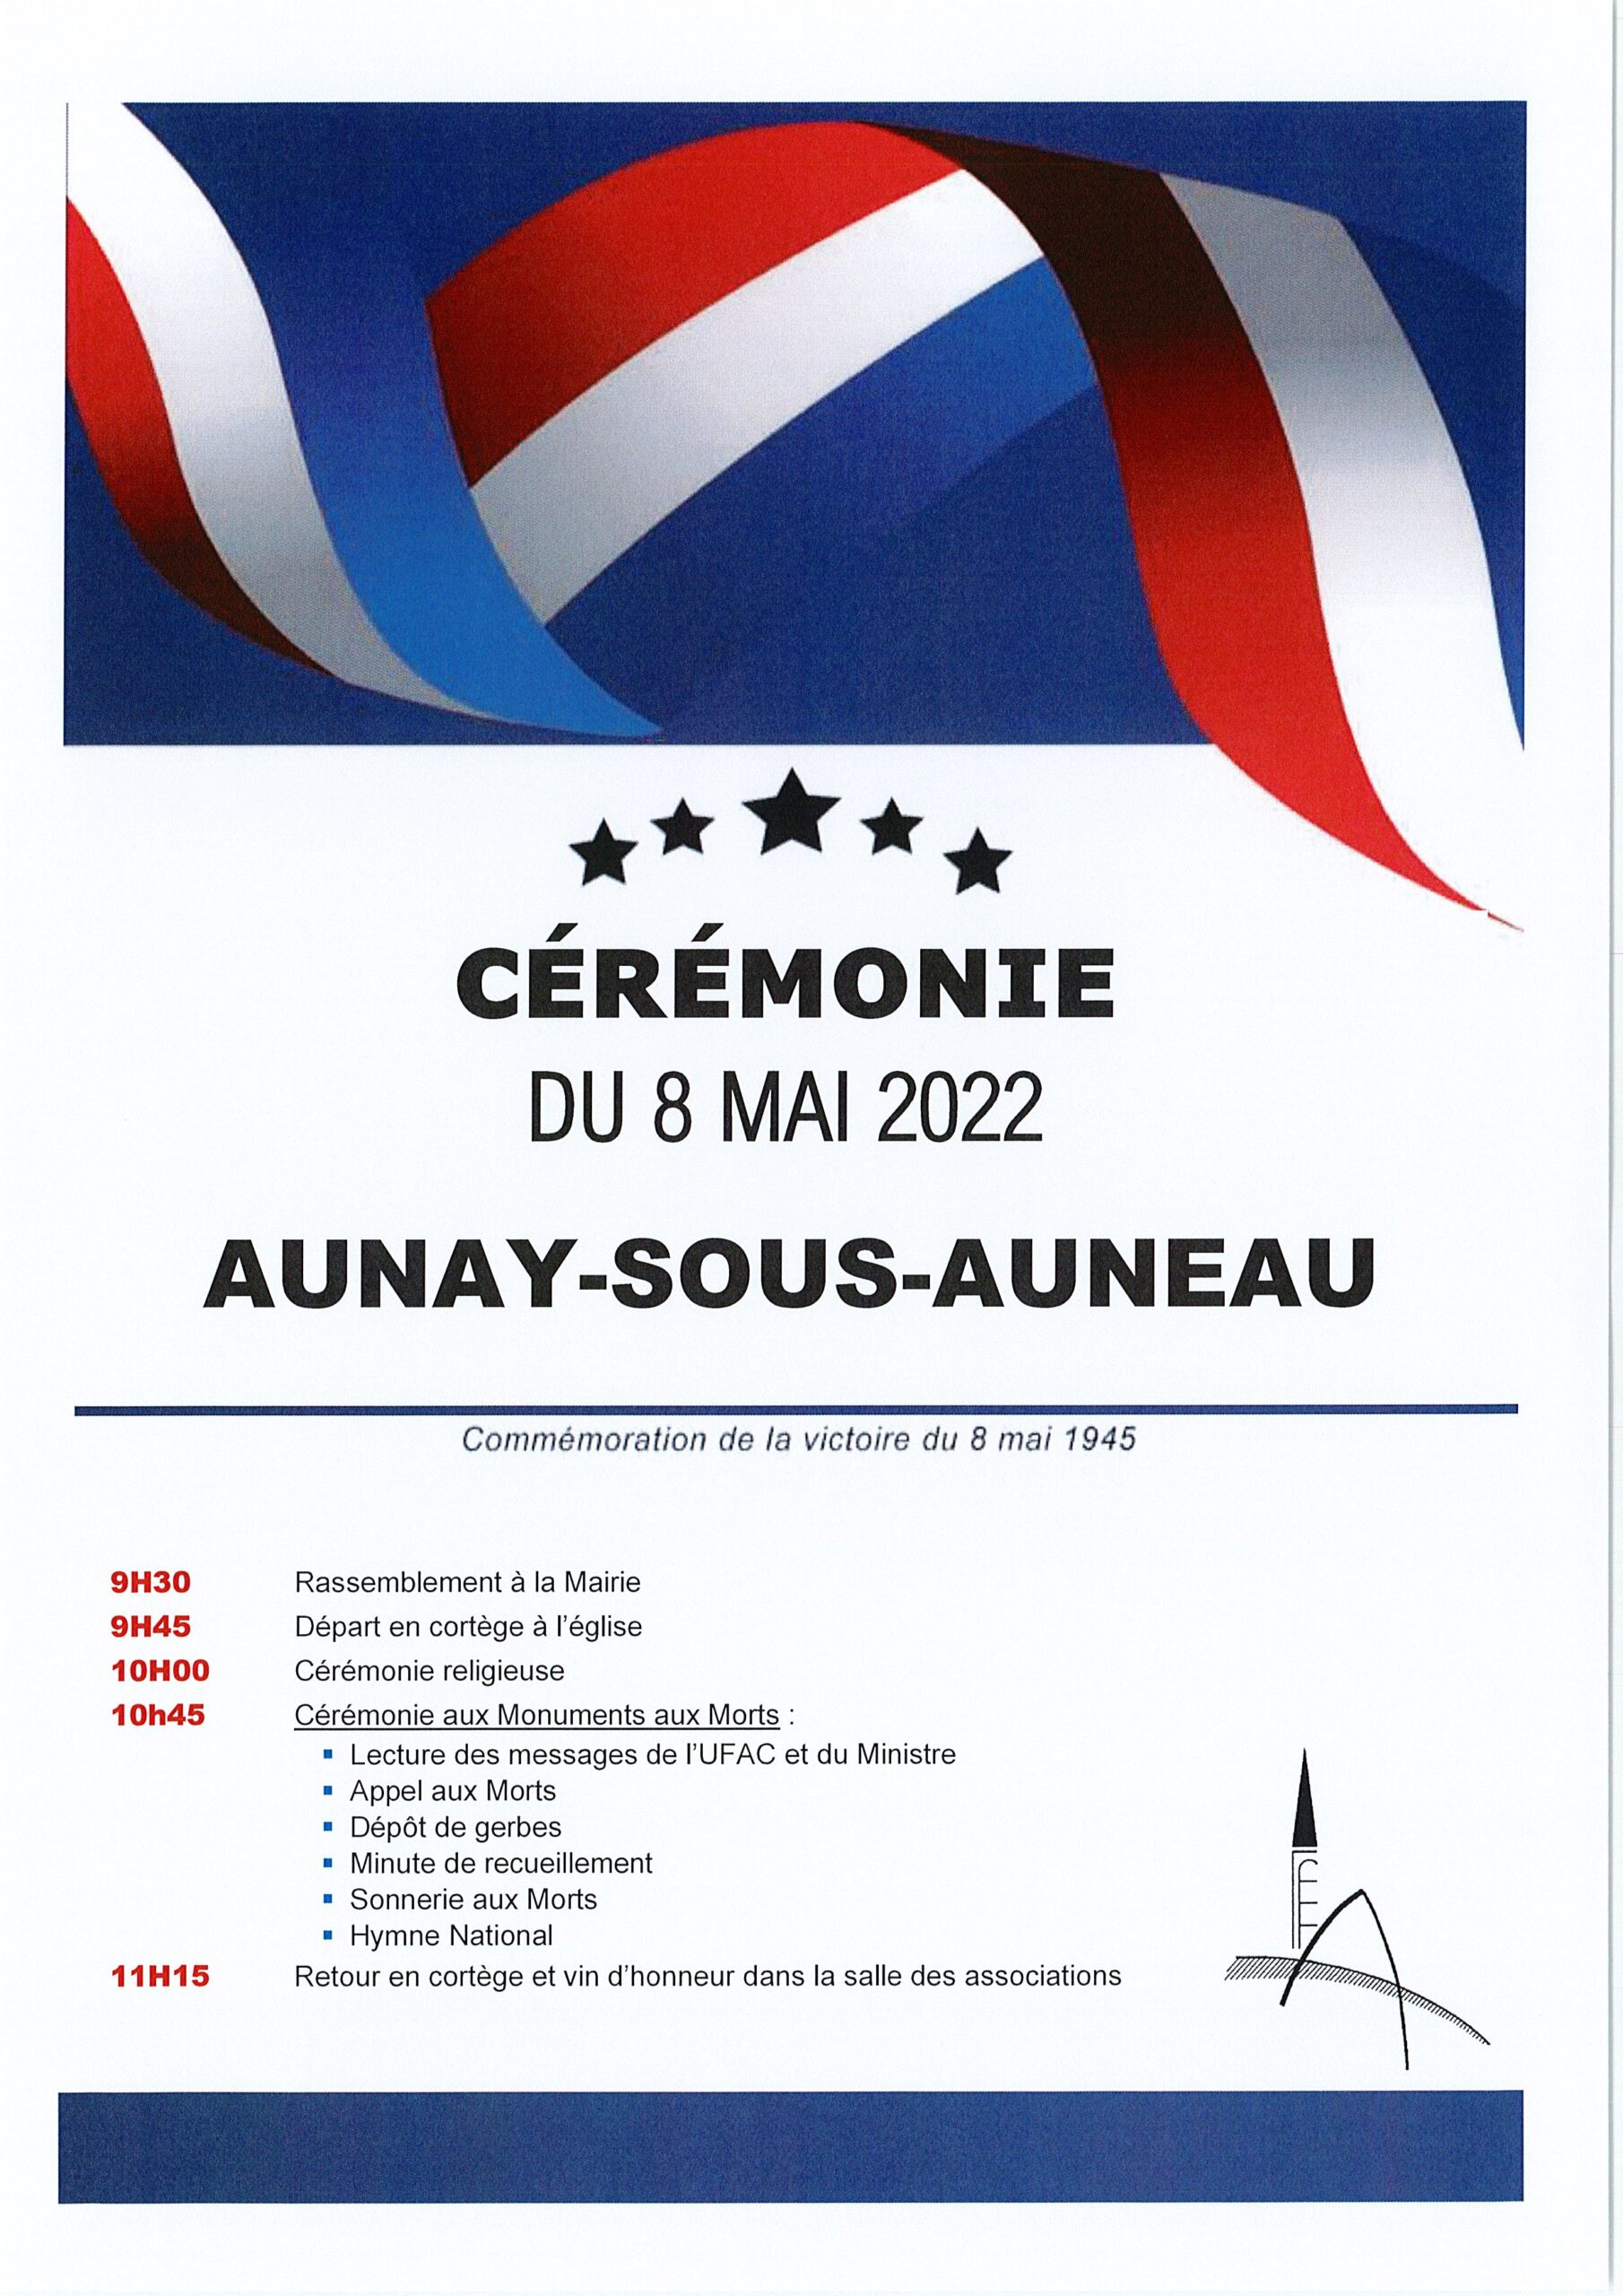 2022 - Aunay-sous-Auneau - Cérémonie 8 Mai